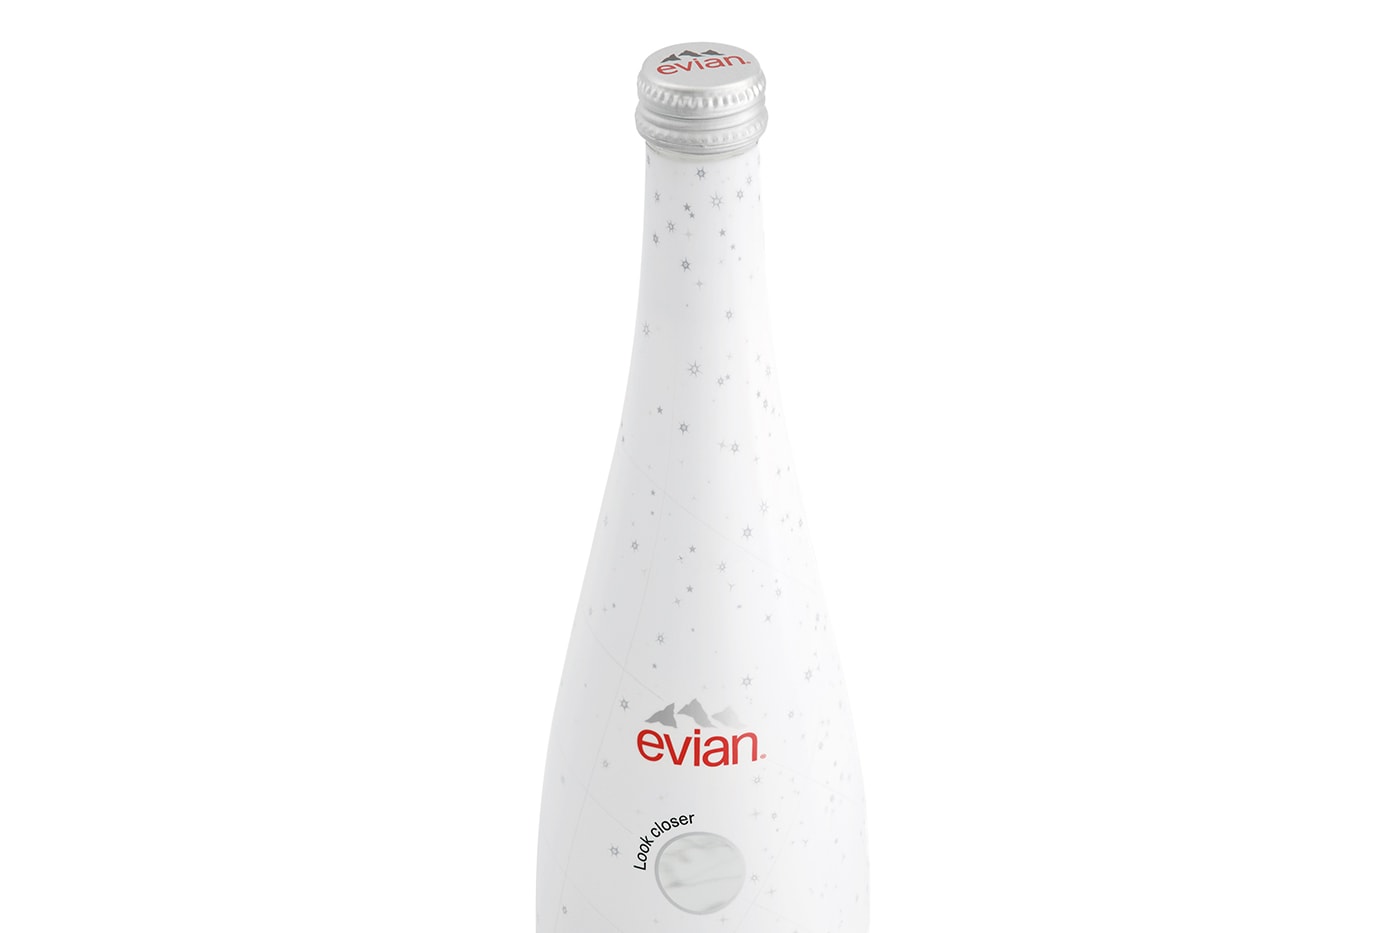 エビアンとコペルニが星座に着想した幻想的なガラスボトルを製作 Coperni evian Bottle Collaboration Release Info Date Buy Price 